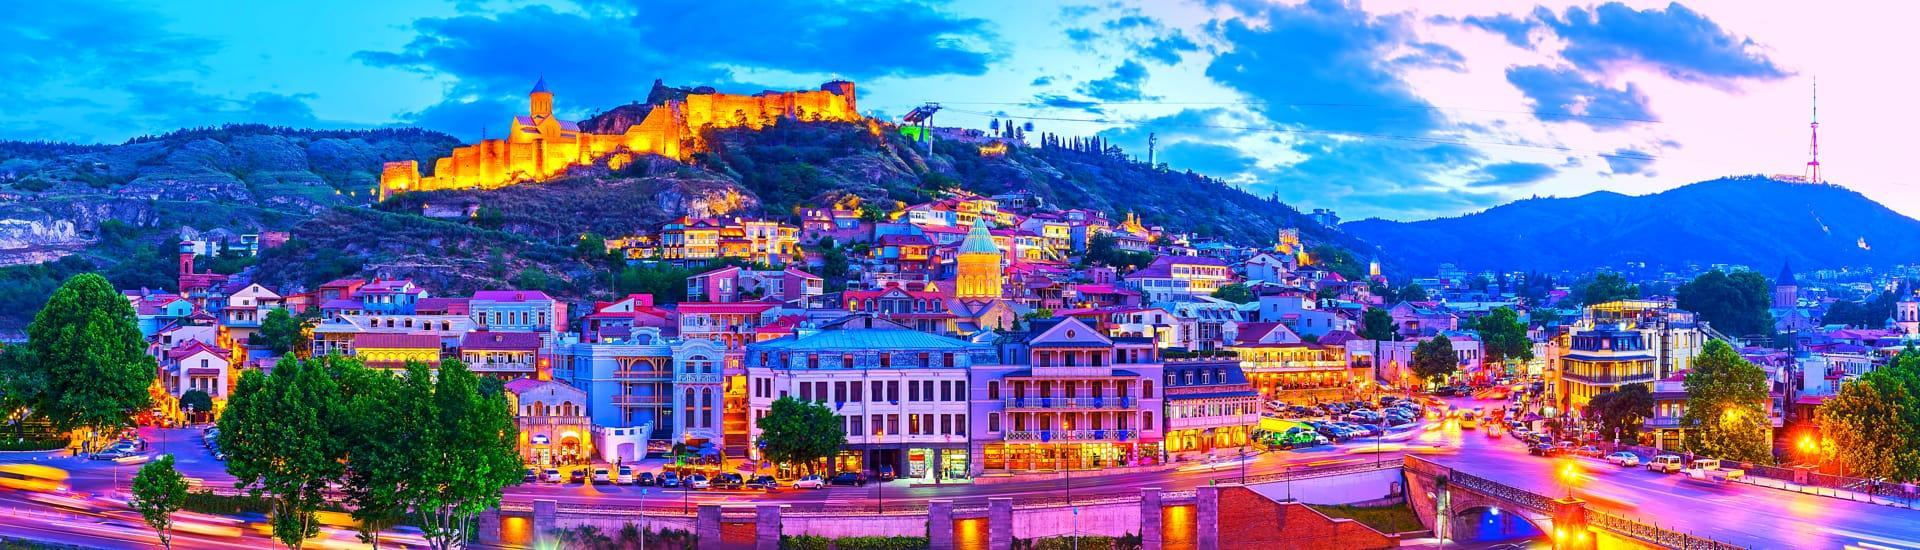 ابحث عن أفضل الفنادق في مدينة تبليسي